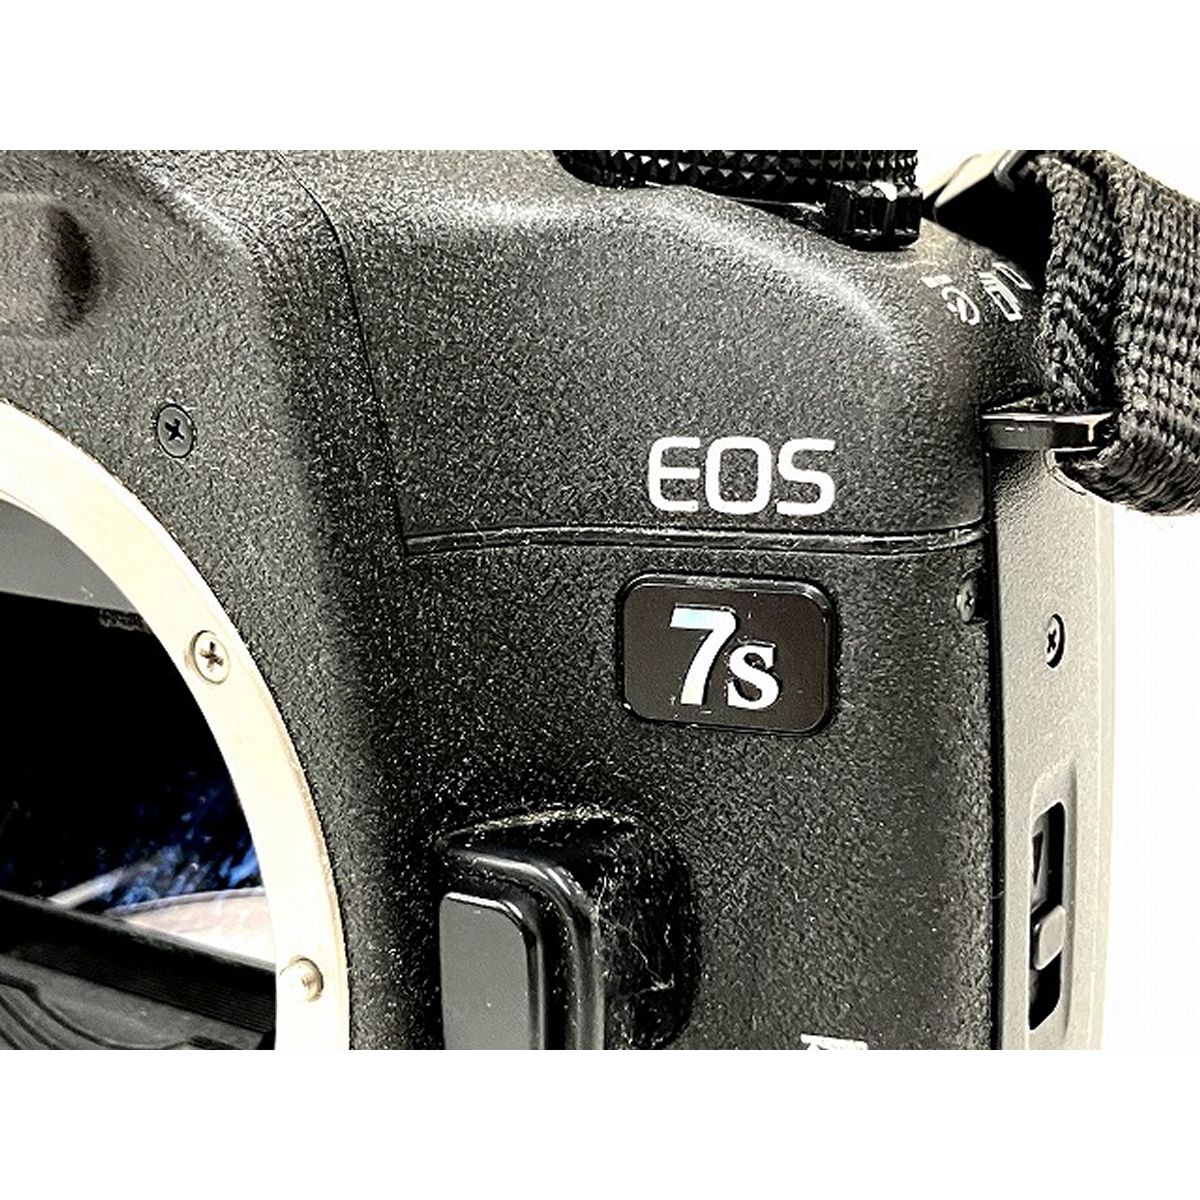 Canon EOS 7S EYE CONTROL フィルムカメラ ボディ キャノン ジャンク O9033912